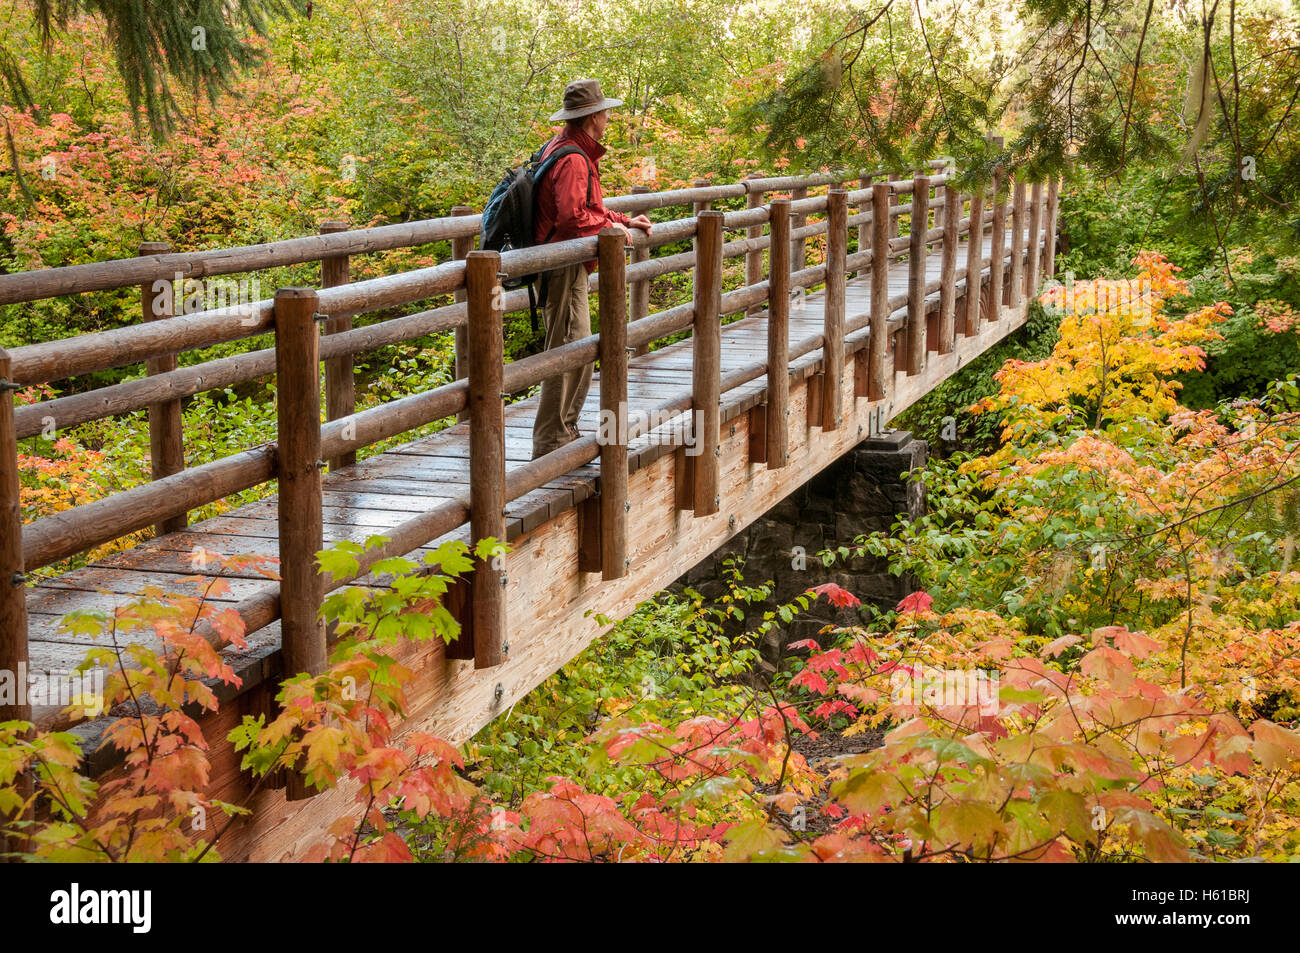 Randonneur sur pont, McKenzie River National Recreation Trail à l'automne, près de Clear Lake, forêt nationale de Willamette, Oregon. Banque D'Images